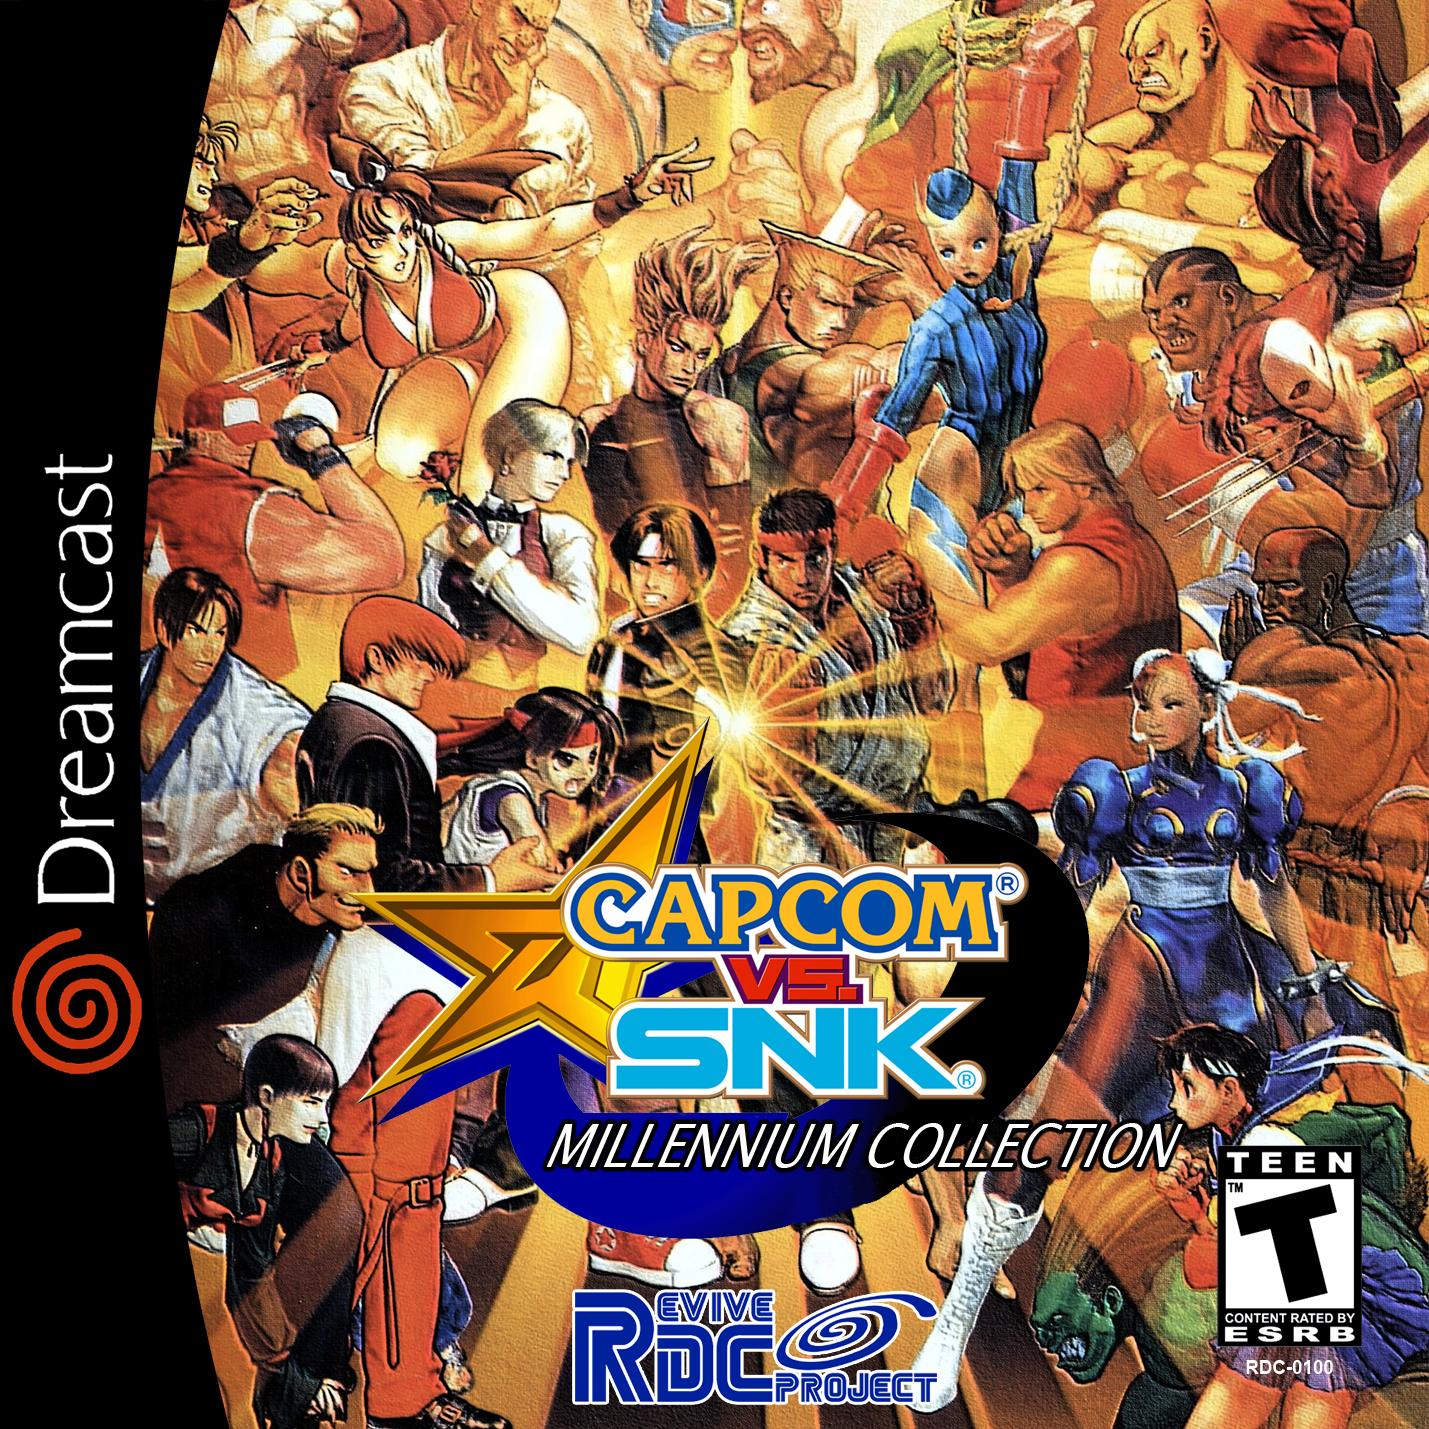 Capcom vs snk 2 dreamcast english rom